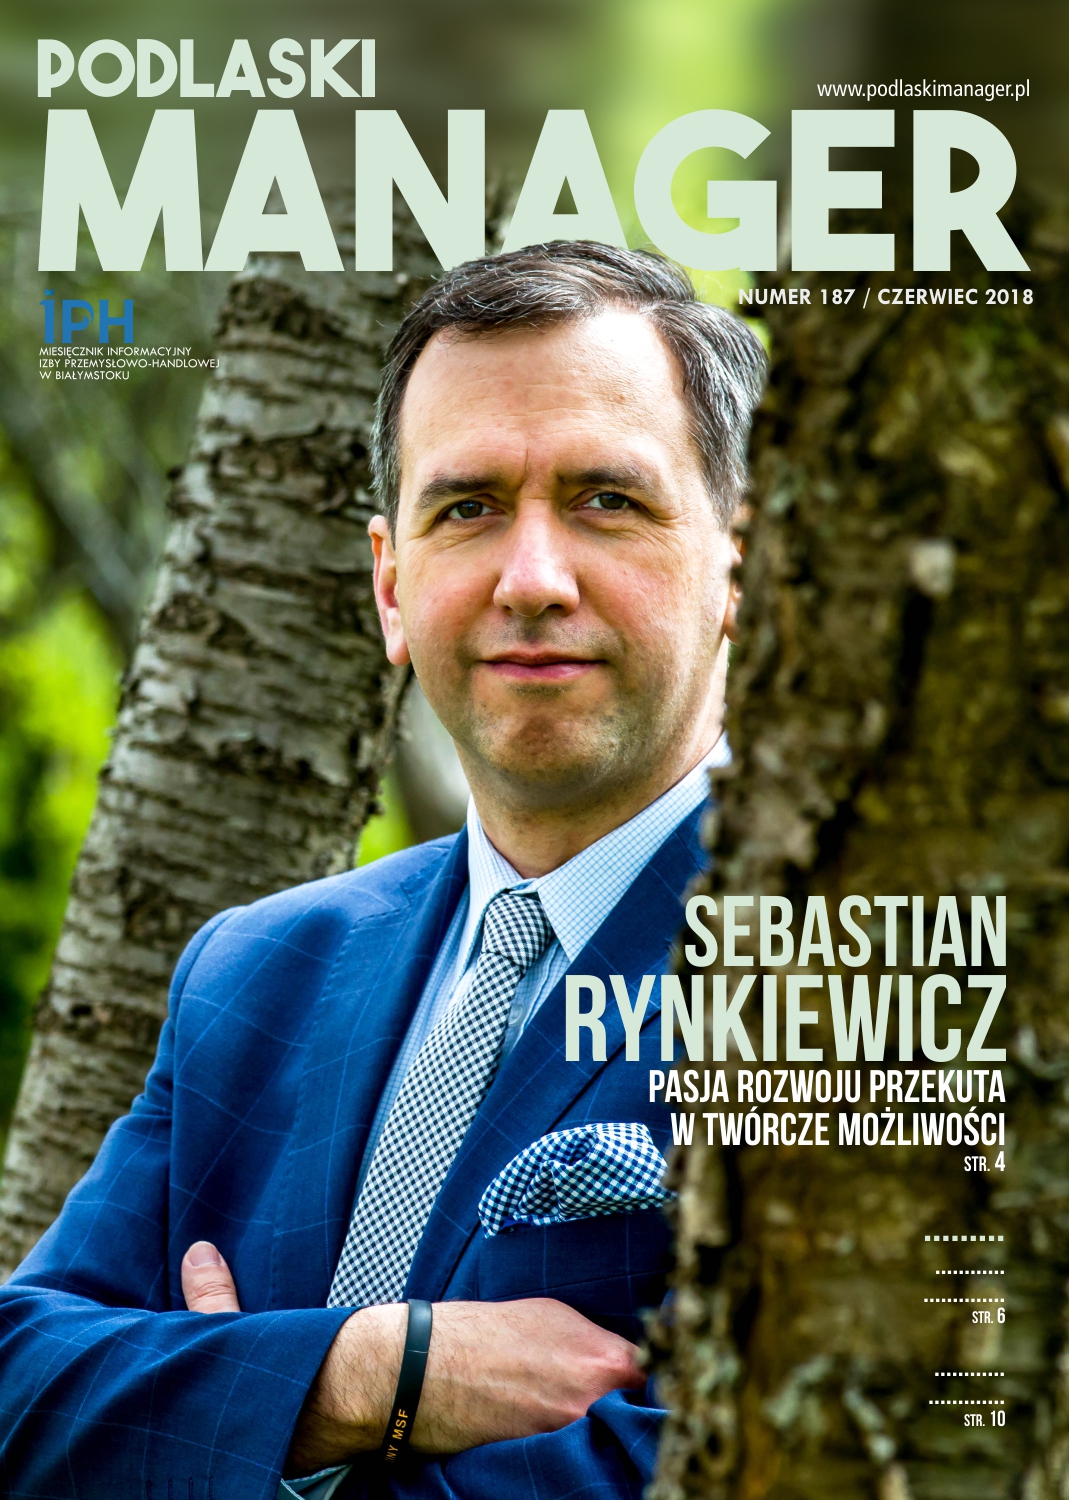 Podlaski Manager: Wywiad z Sebastianem Rynkiewiczem